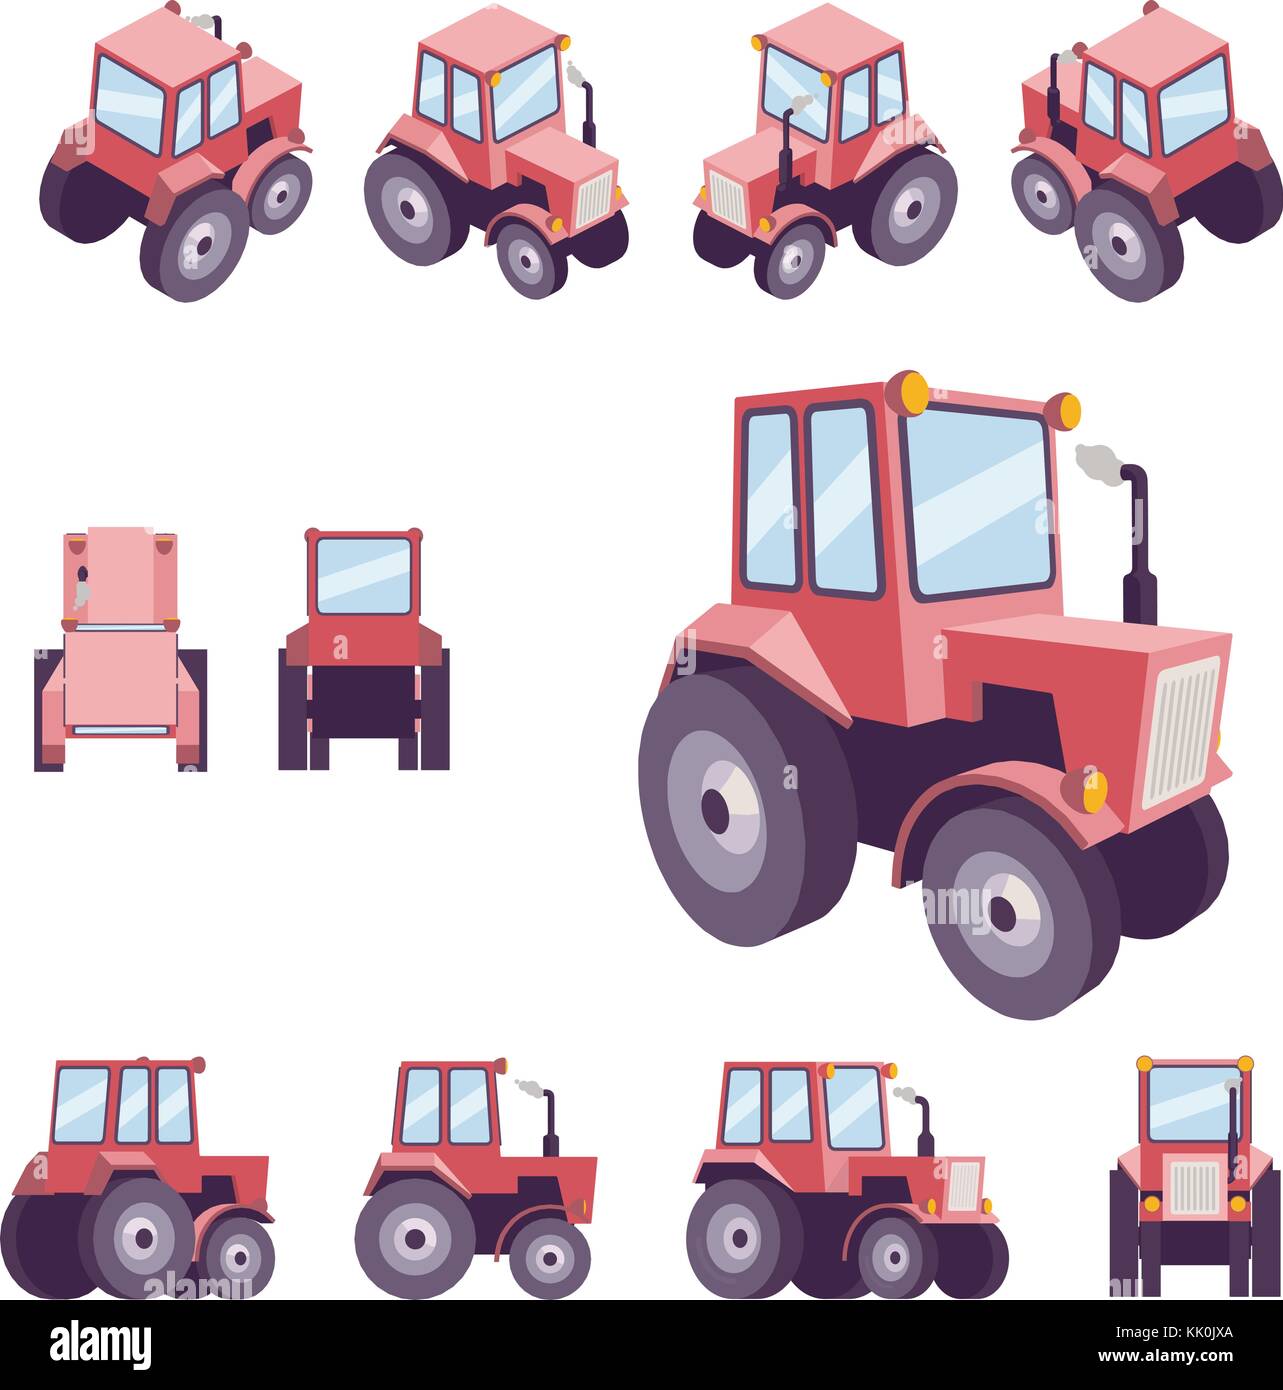 Tracteur agricole rouge, sous des angles différents. vecteur modèle véhicule isolé sur blanc. voir l'avant, arrière, sur le côté, au-dessus, isométriques, dos, perspective 3D, faible Illustration de Vecteur